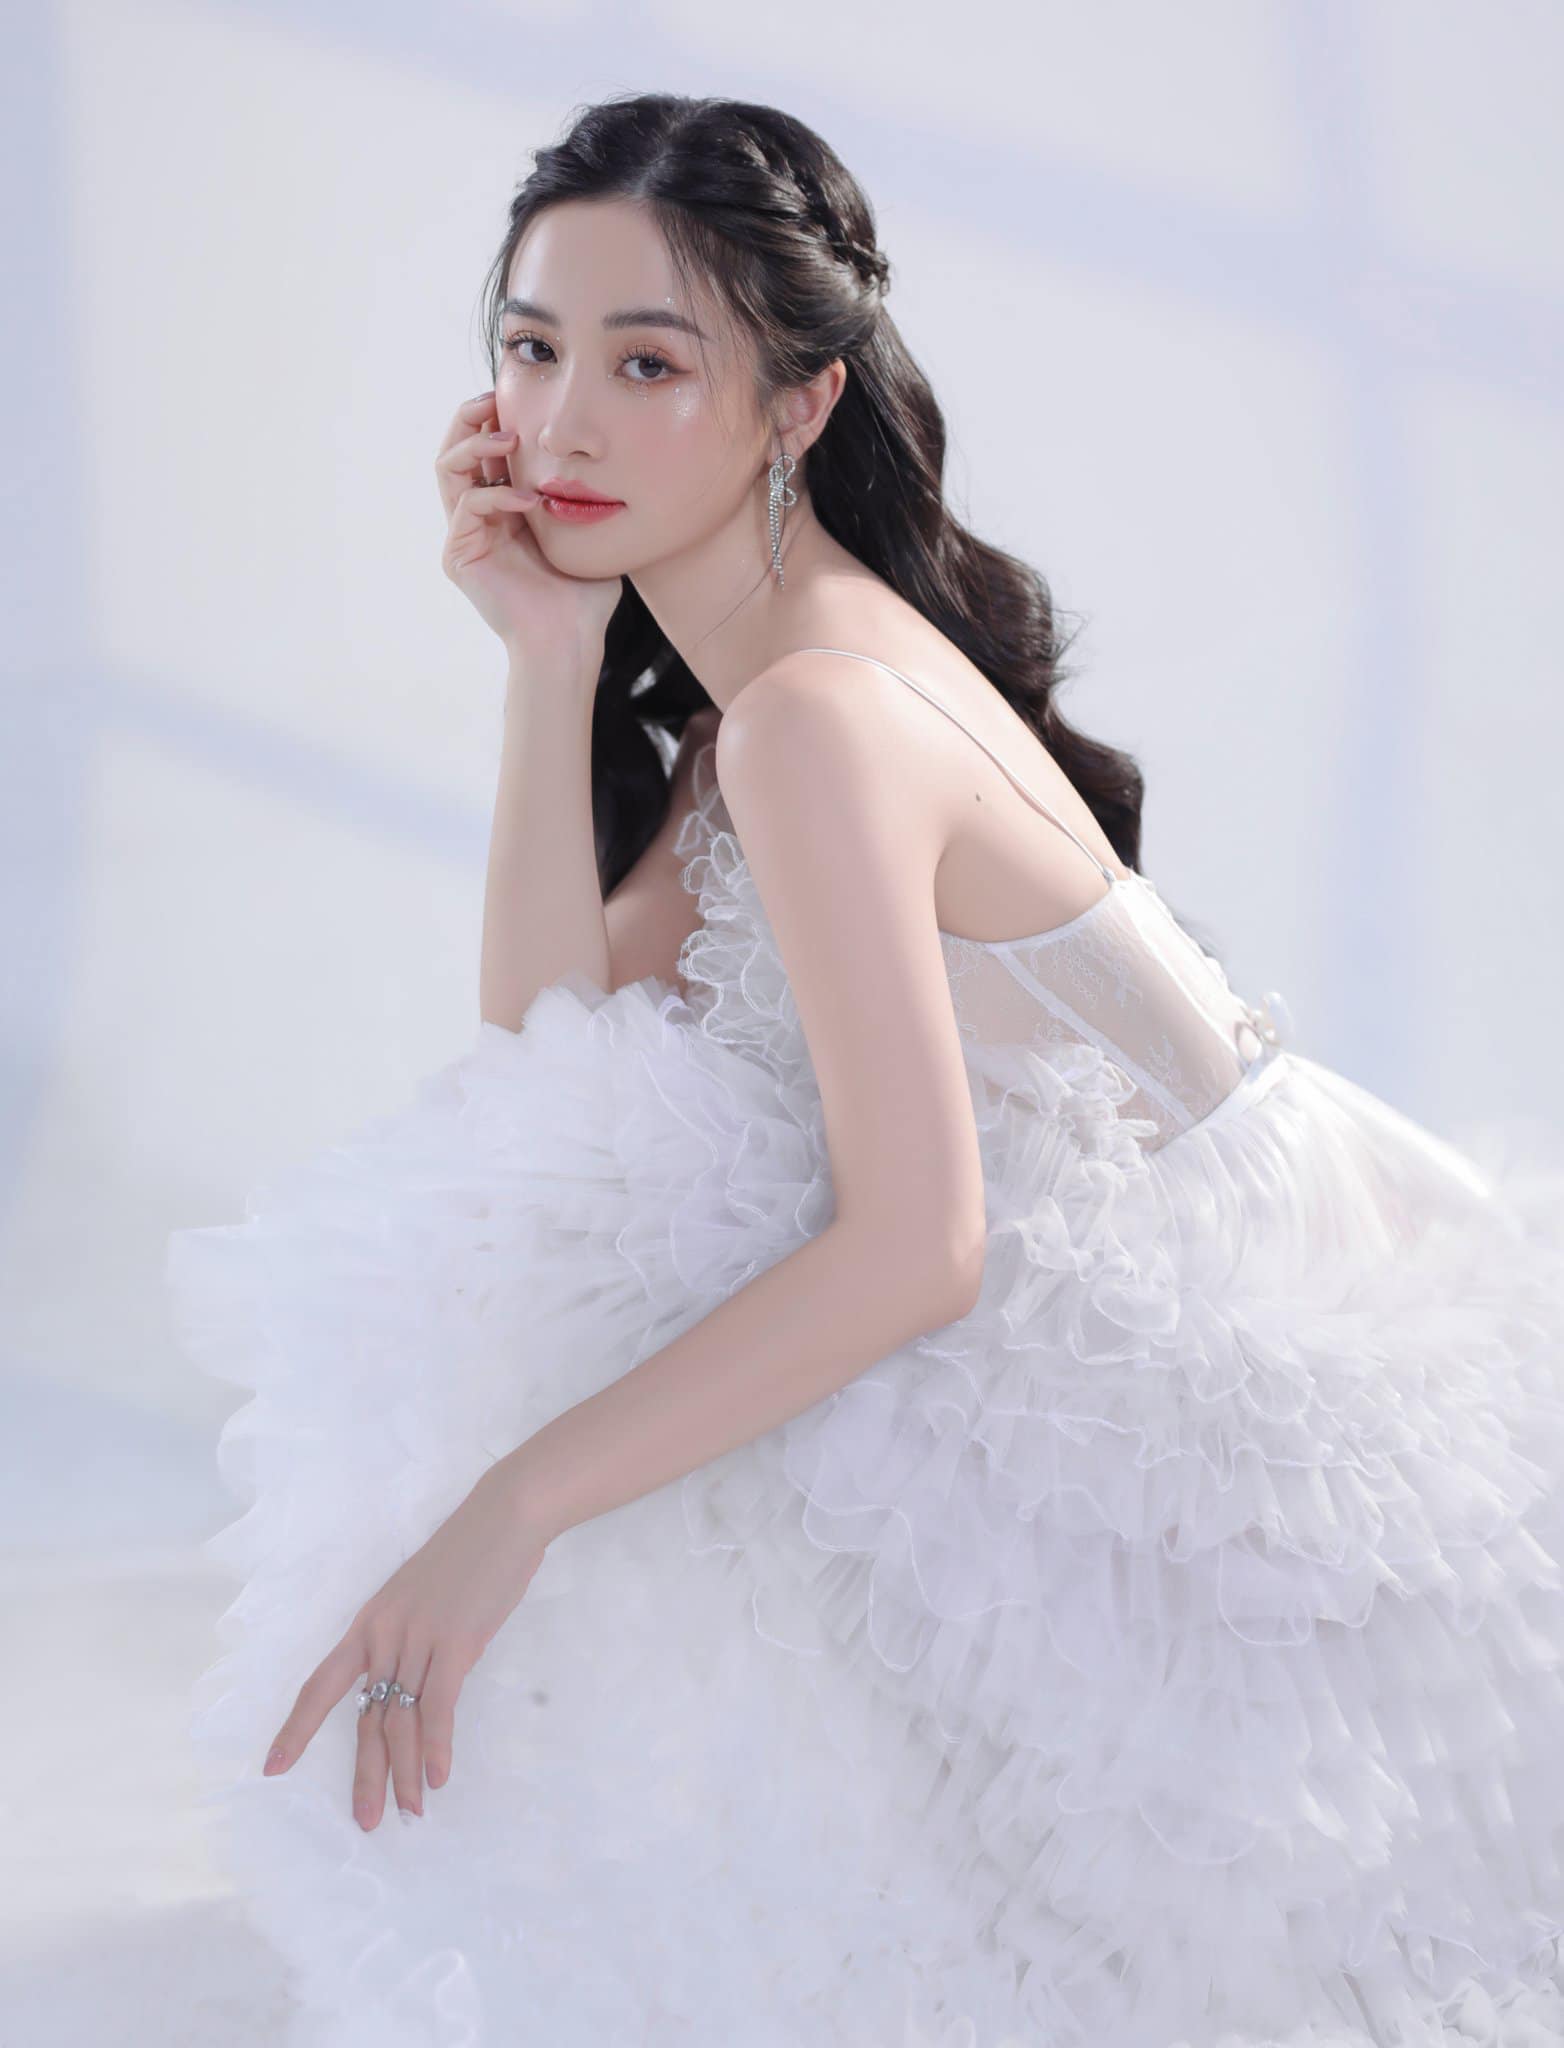 Jun Vũ yêu kiều, dịu dàng như công chúa trong bộ ảnh mới. Ở tuổi 26, nữ diễn viên gắn với hình ảnh sang chảnh, đài các.